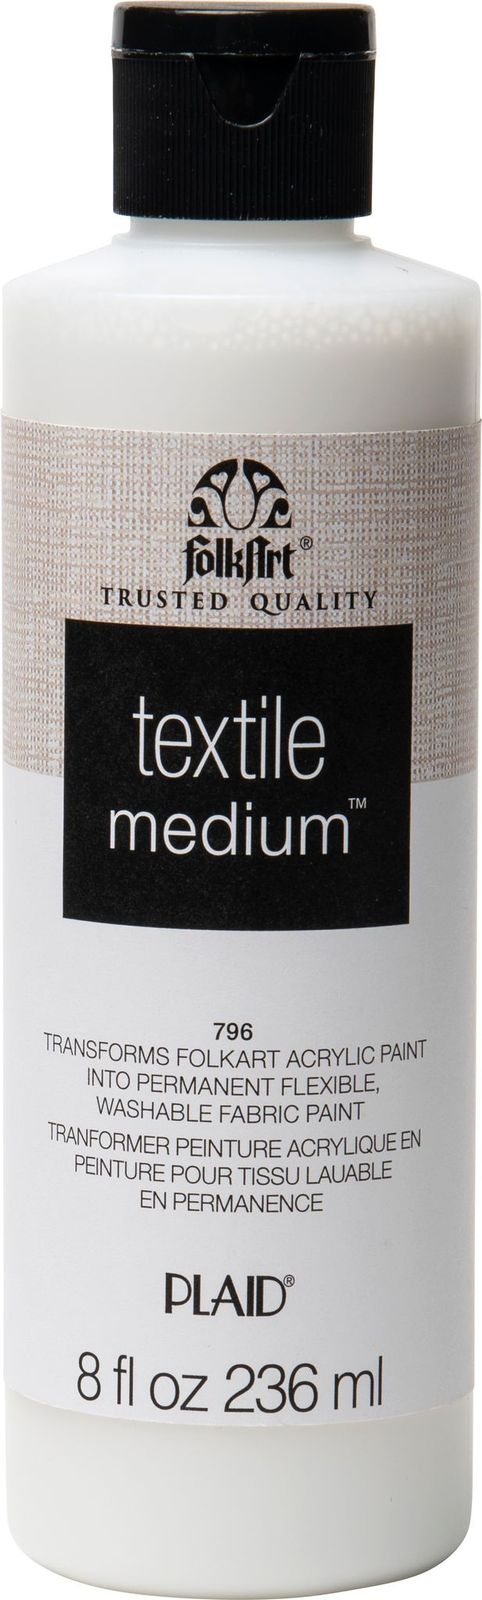 Textile Medium